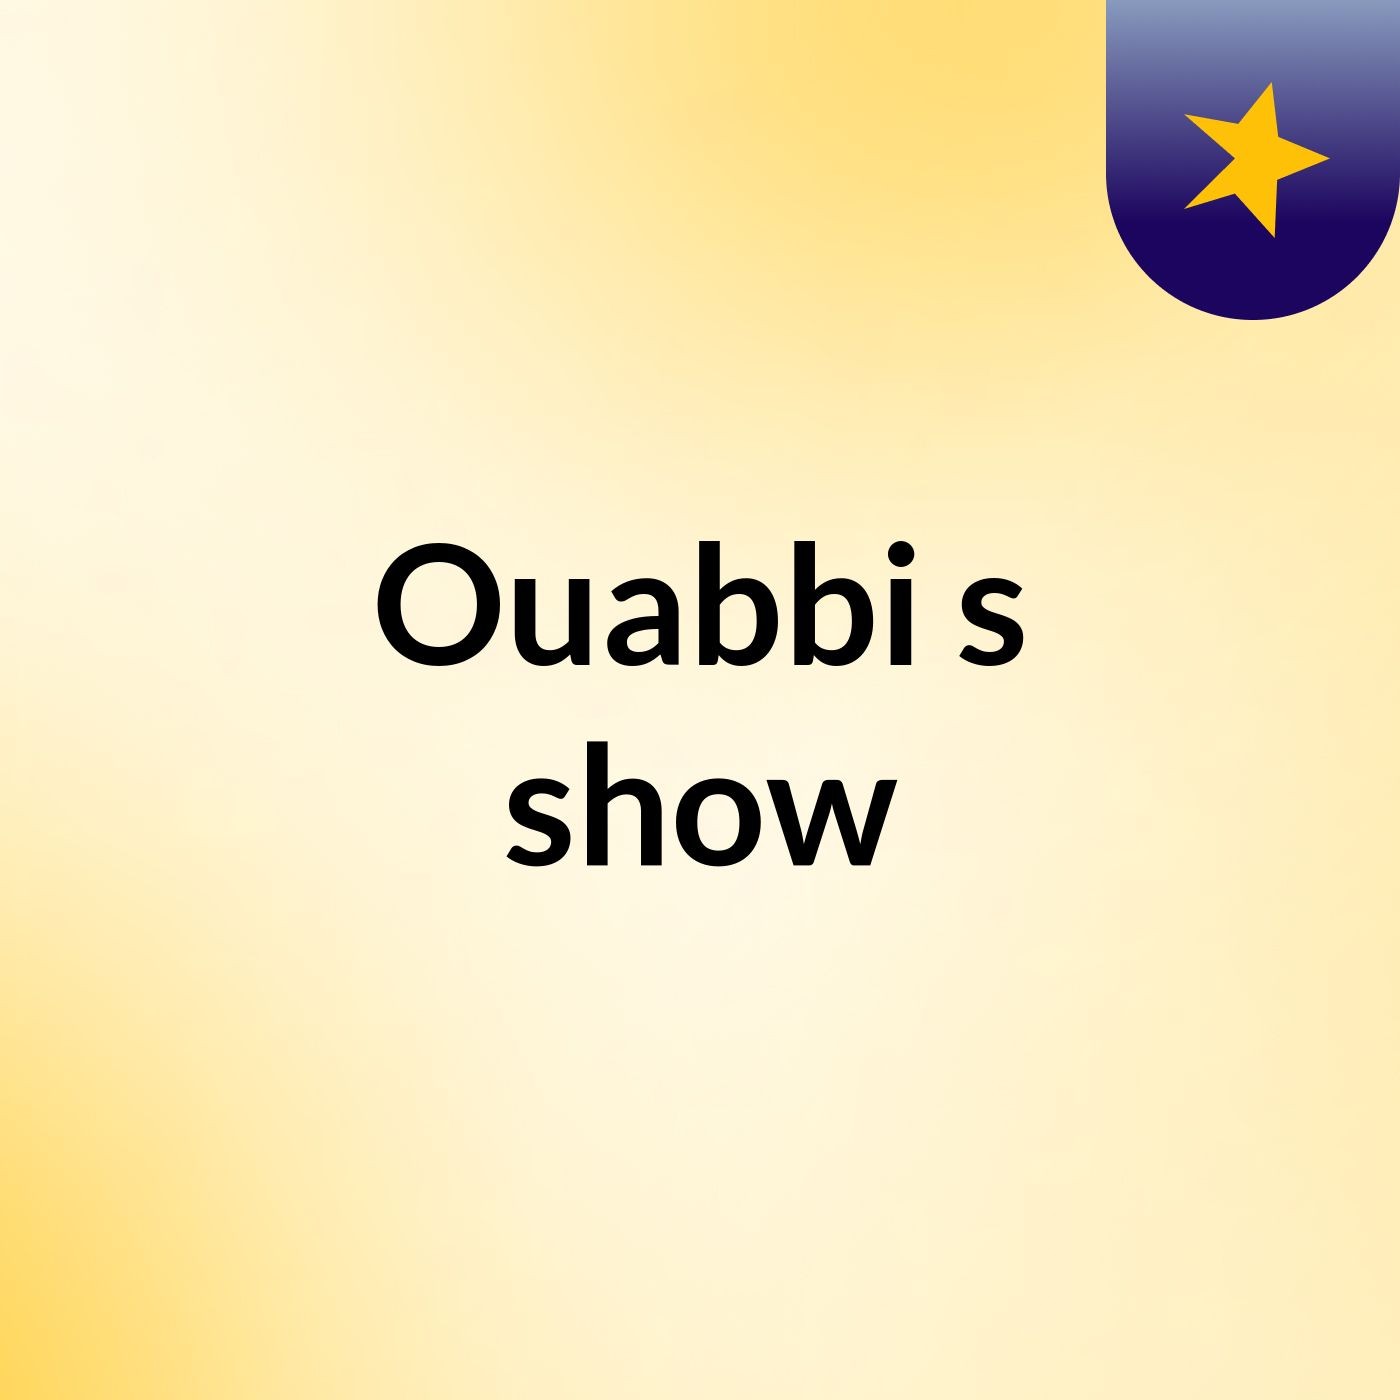 Ouabbi's show